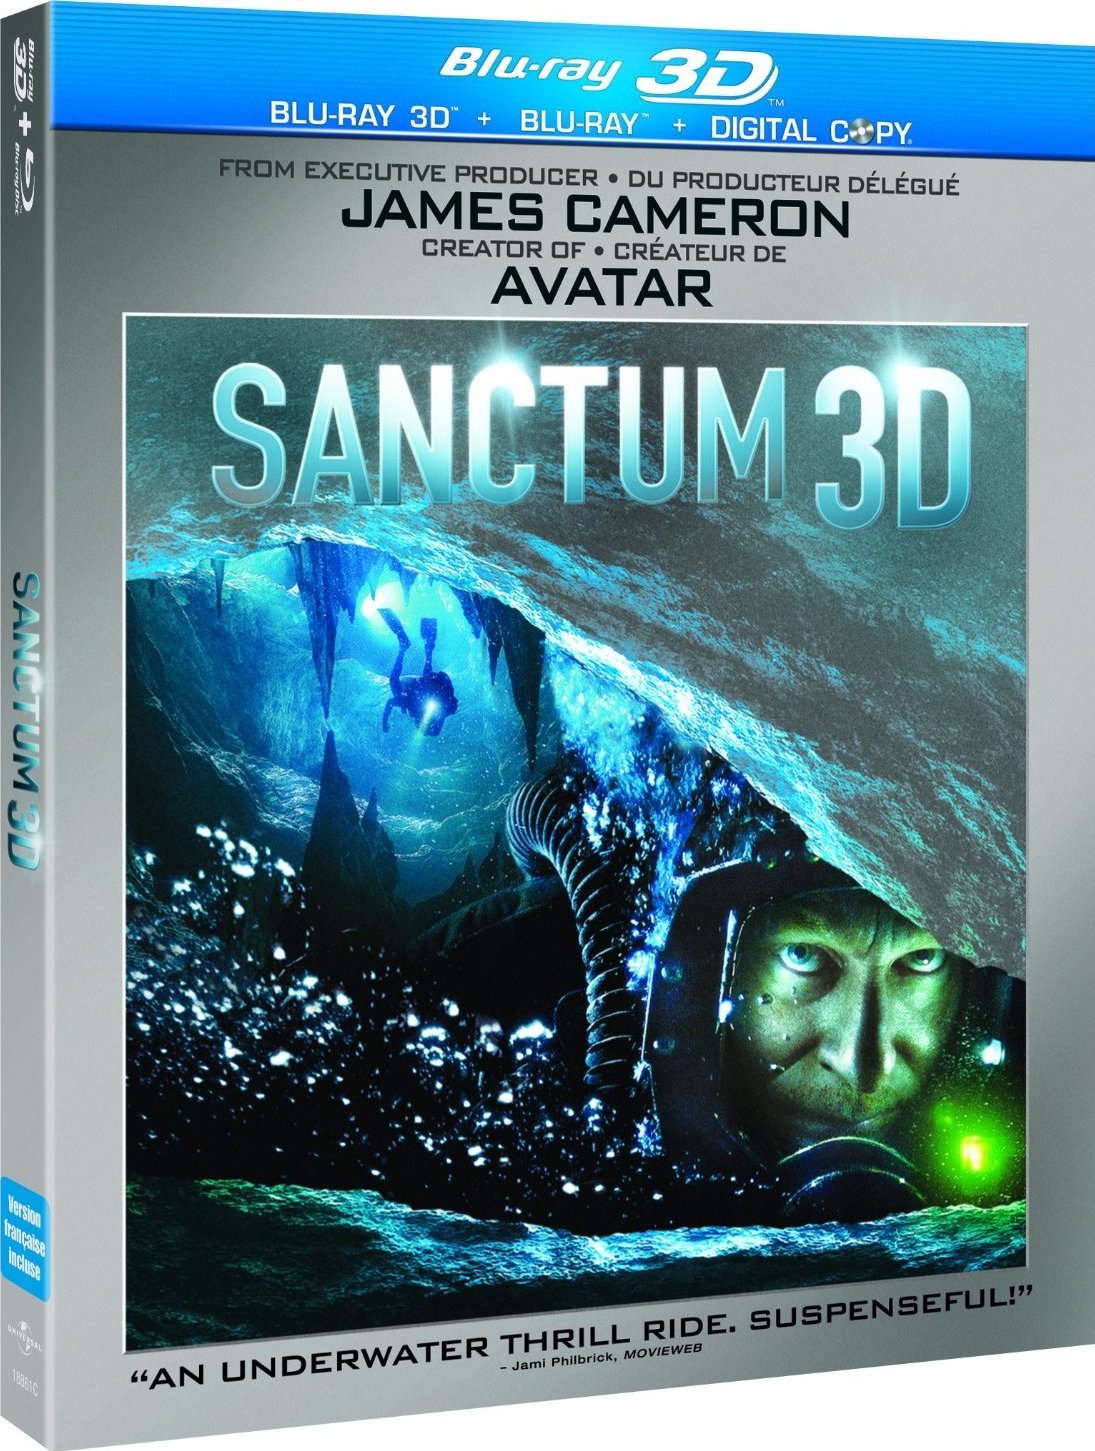 夺命深渊/潜行深渊(港)/3D驚天洞地(台) 台版中字 Sanctum.2011.TW.3D+2D.Blu-ray.AVC.1080p.DTS-HD.MA.5.1-FC1983    [38.63 GB ]-1.jpg